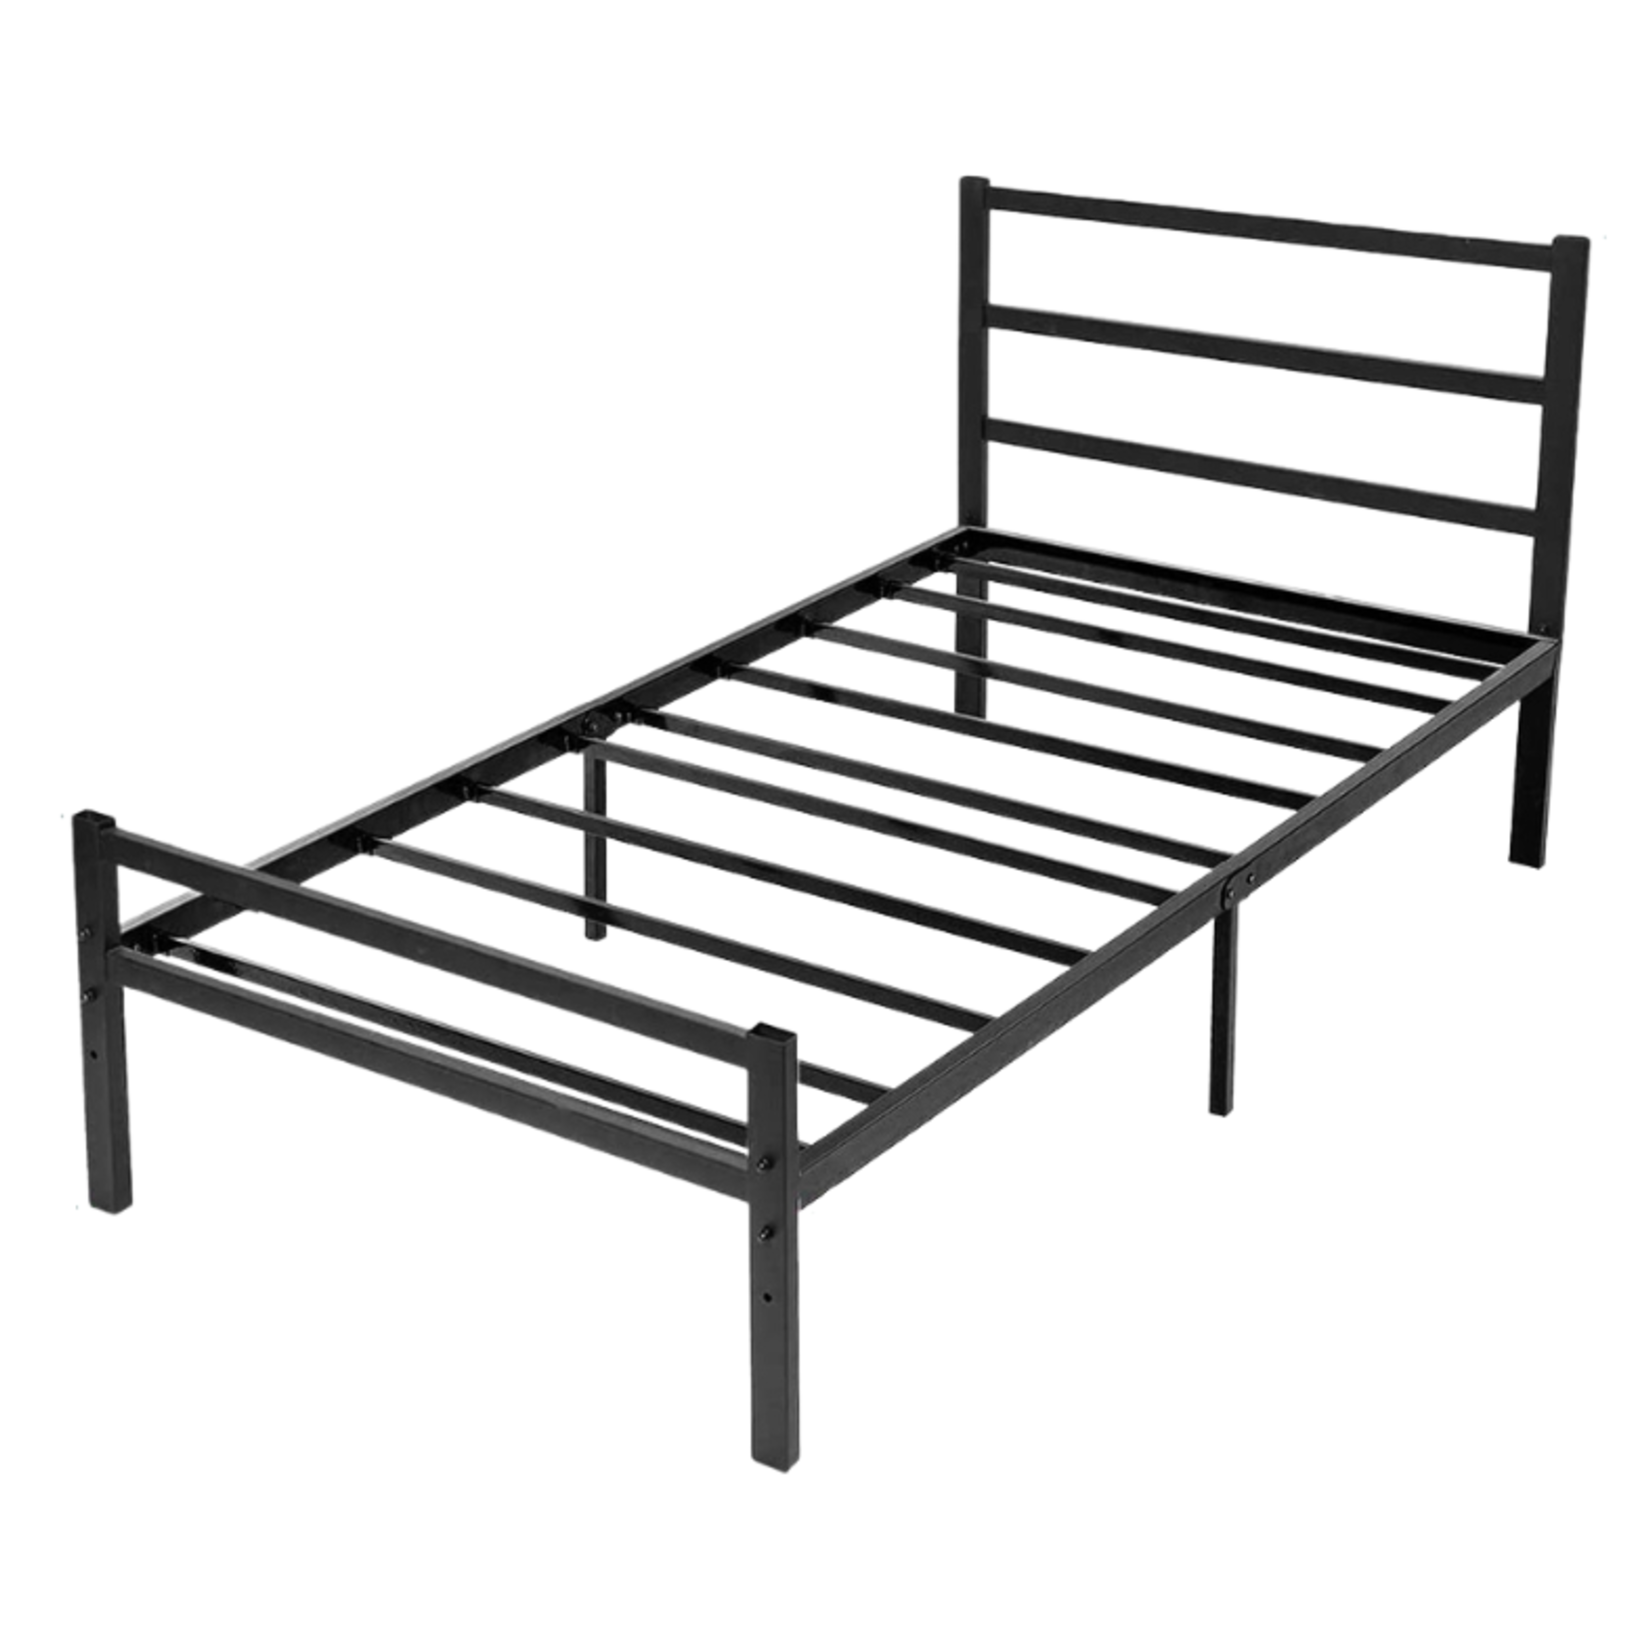 KingSo Metal Platform Bed Frame - Twin - Black